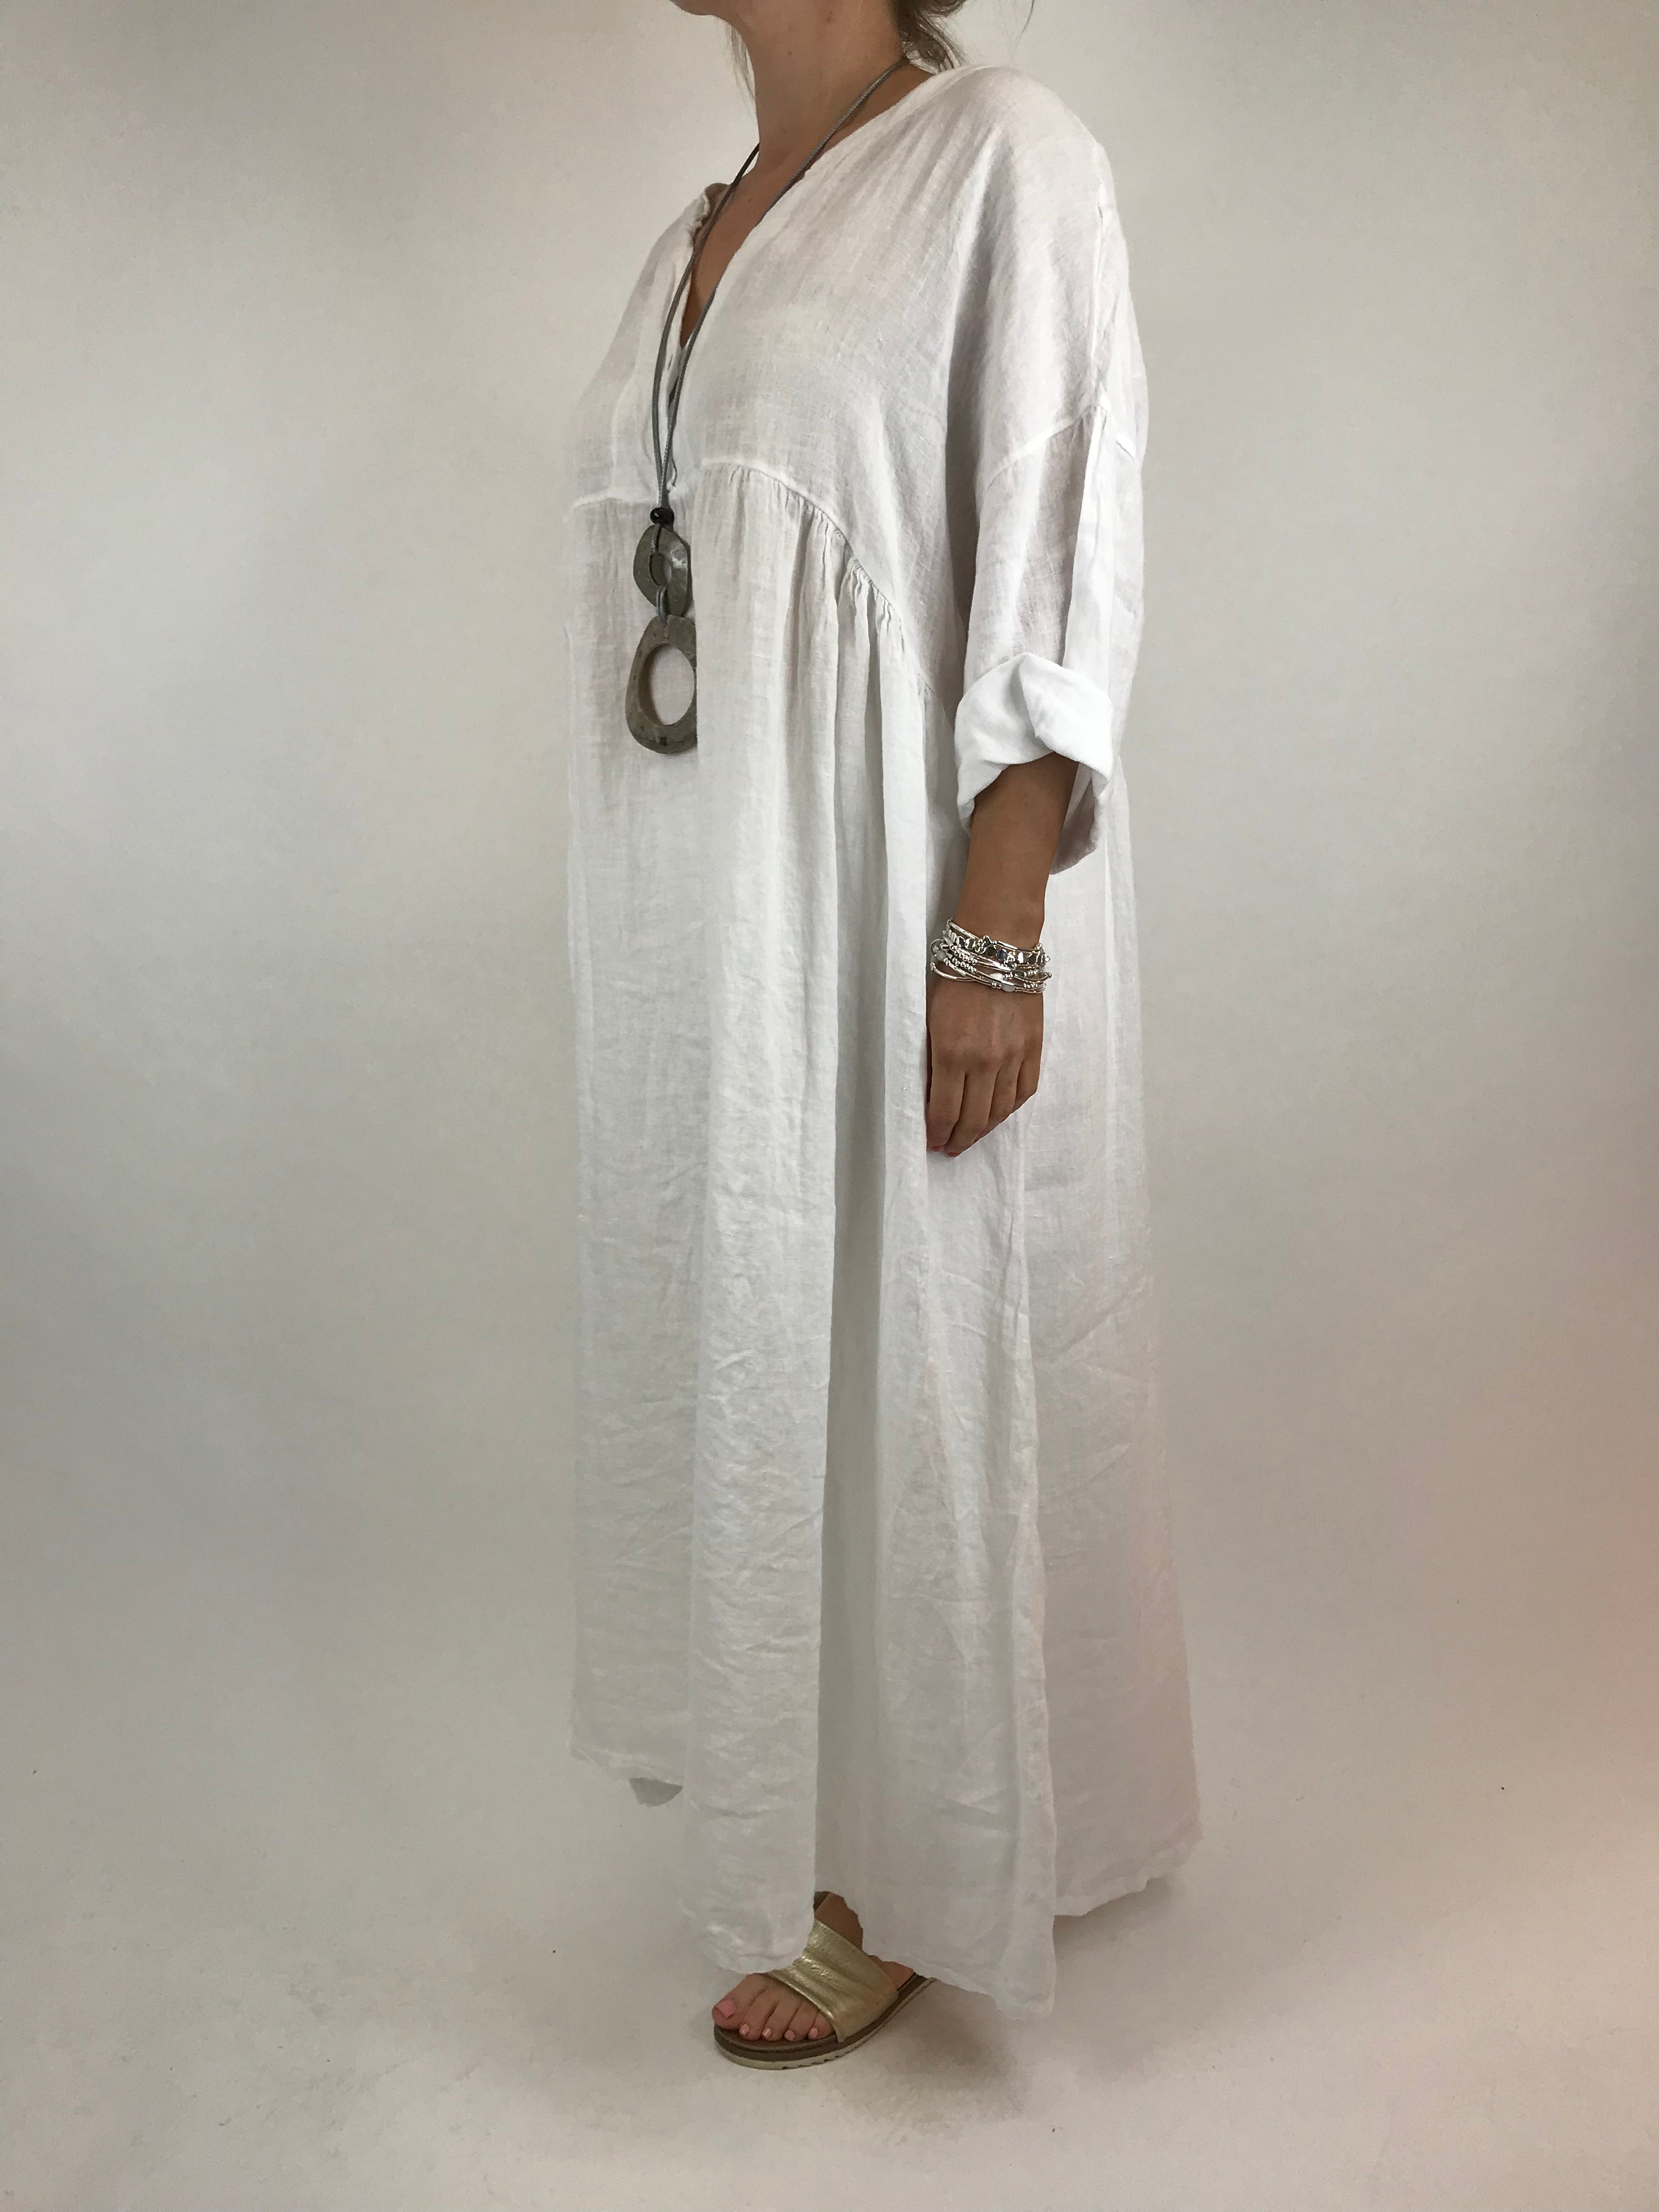 Lagenlook Claire Linen Tunic in White. code 5735 - Lagenlook Clothing UK